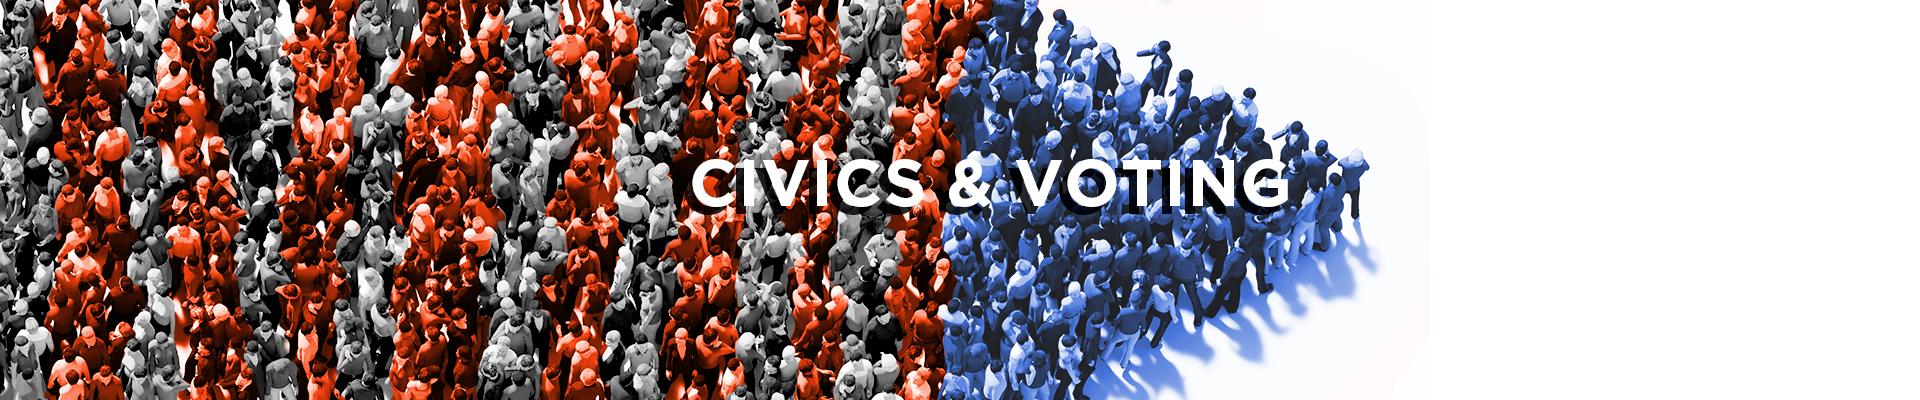 Civics & Voting